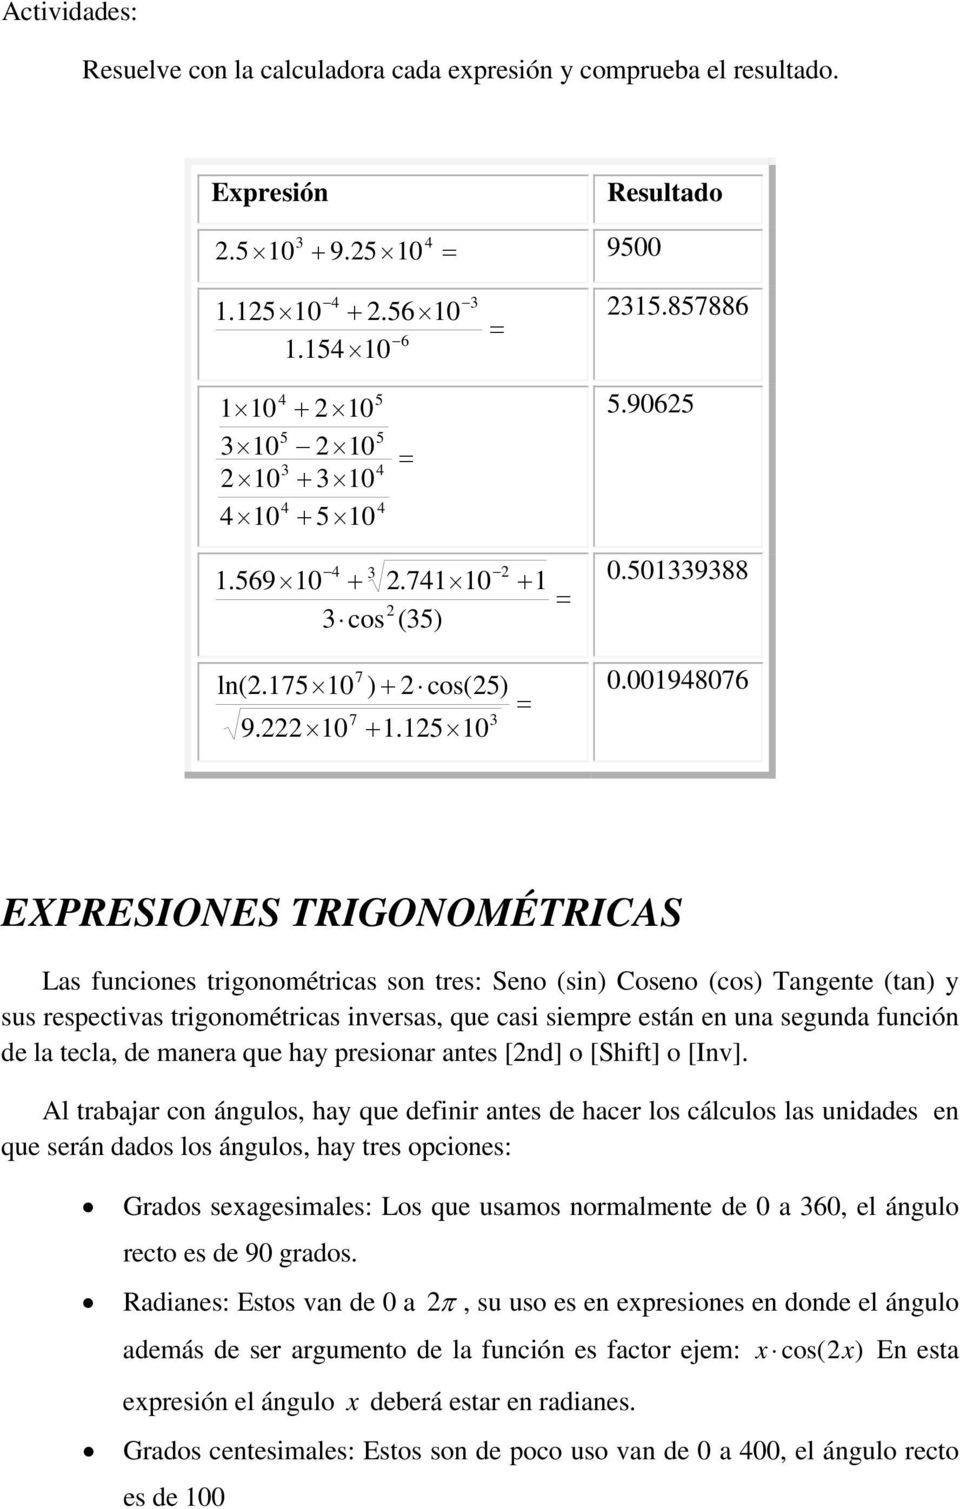 0 EXPRESIONES TRIGONOMÉTRICAS Las funciones trigonométricas son tres: Seno (sin) Coseno (cos) Tangente (tan) y sus respectivas trigonométricas inversas, que casi siempre están en una segunda función